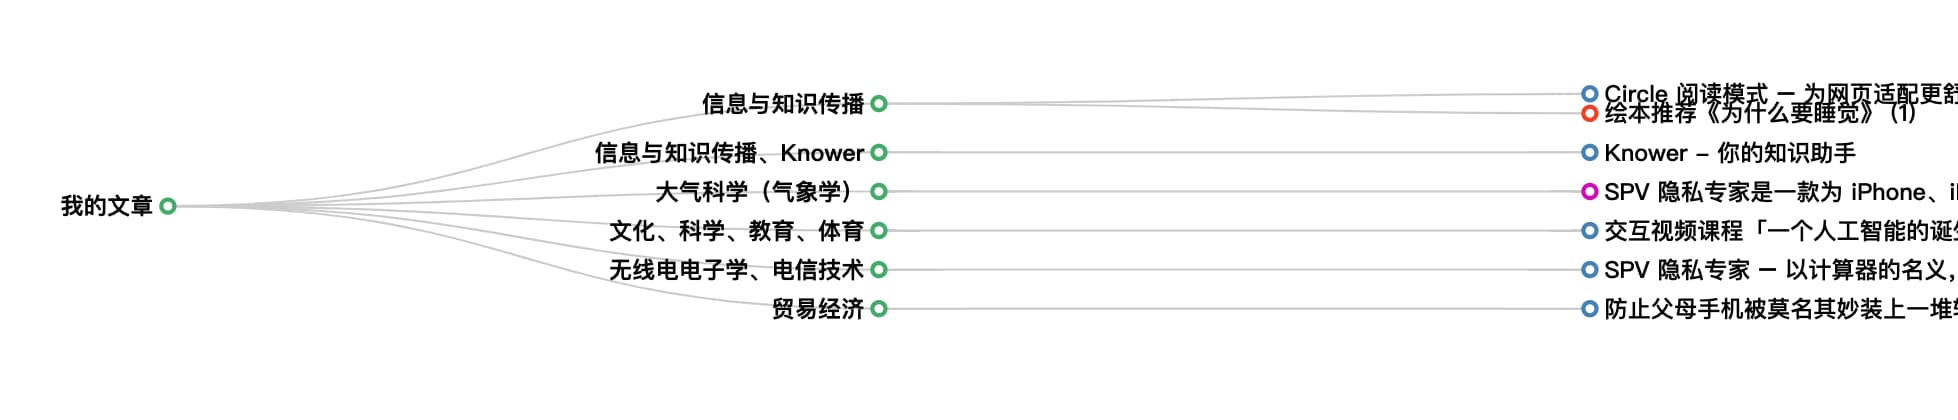 Knower - 能自动识别、提炼、检索、聚合的网络书签、文档收藏工具 5